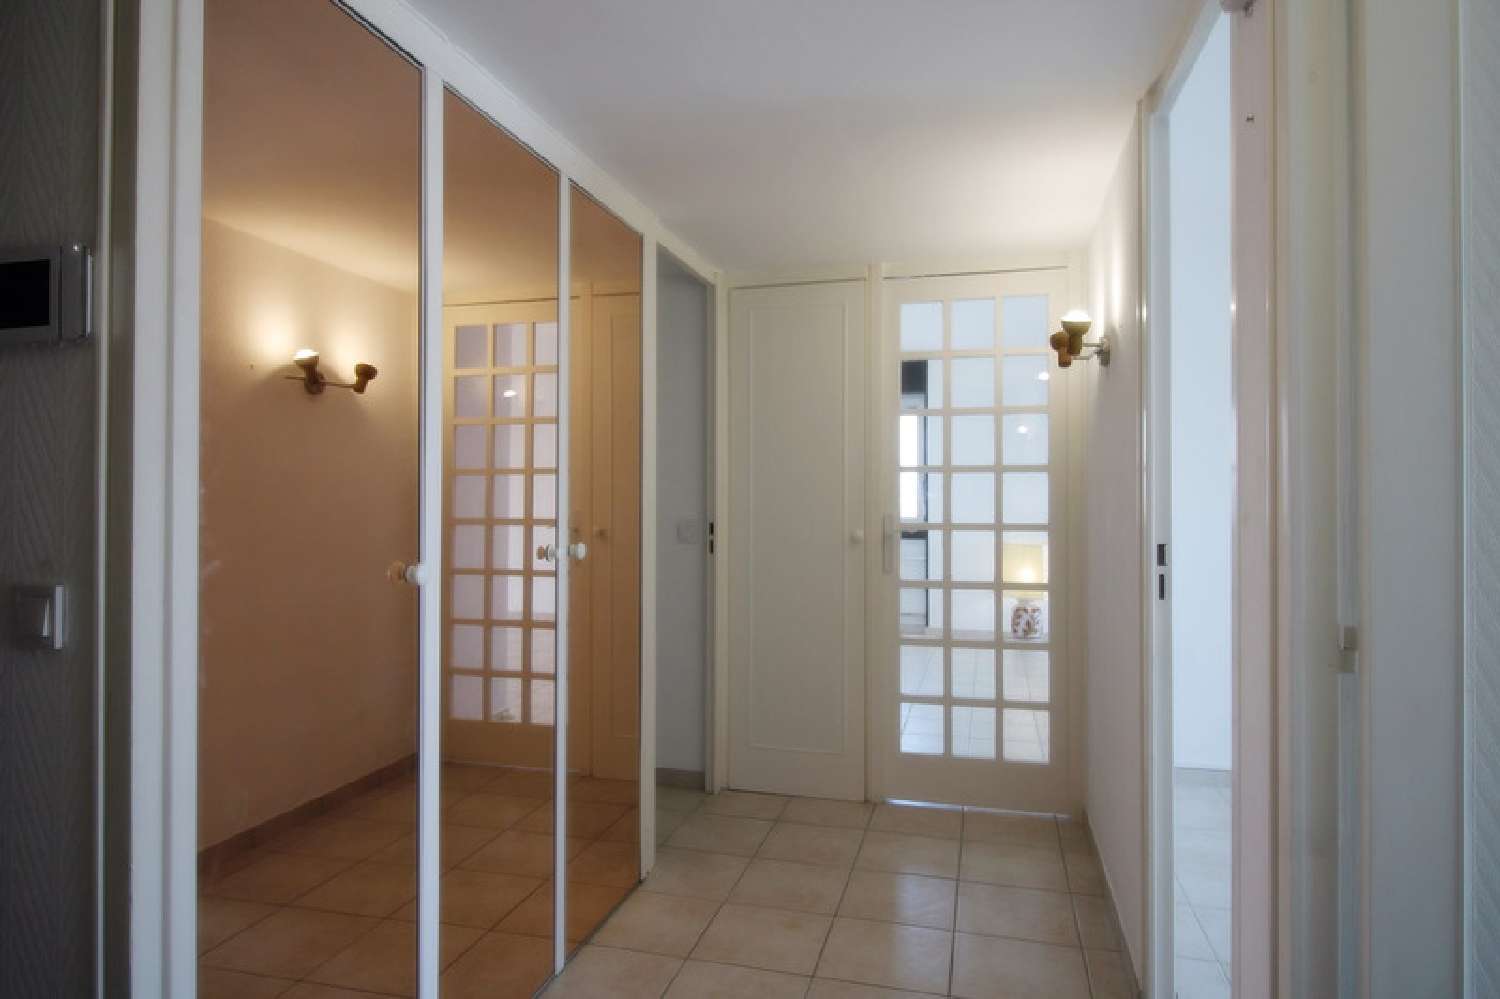  à vendre appartement Roanne Loire 4